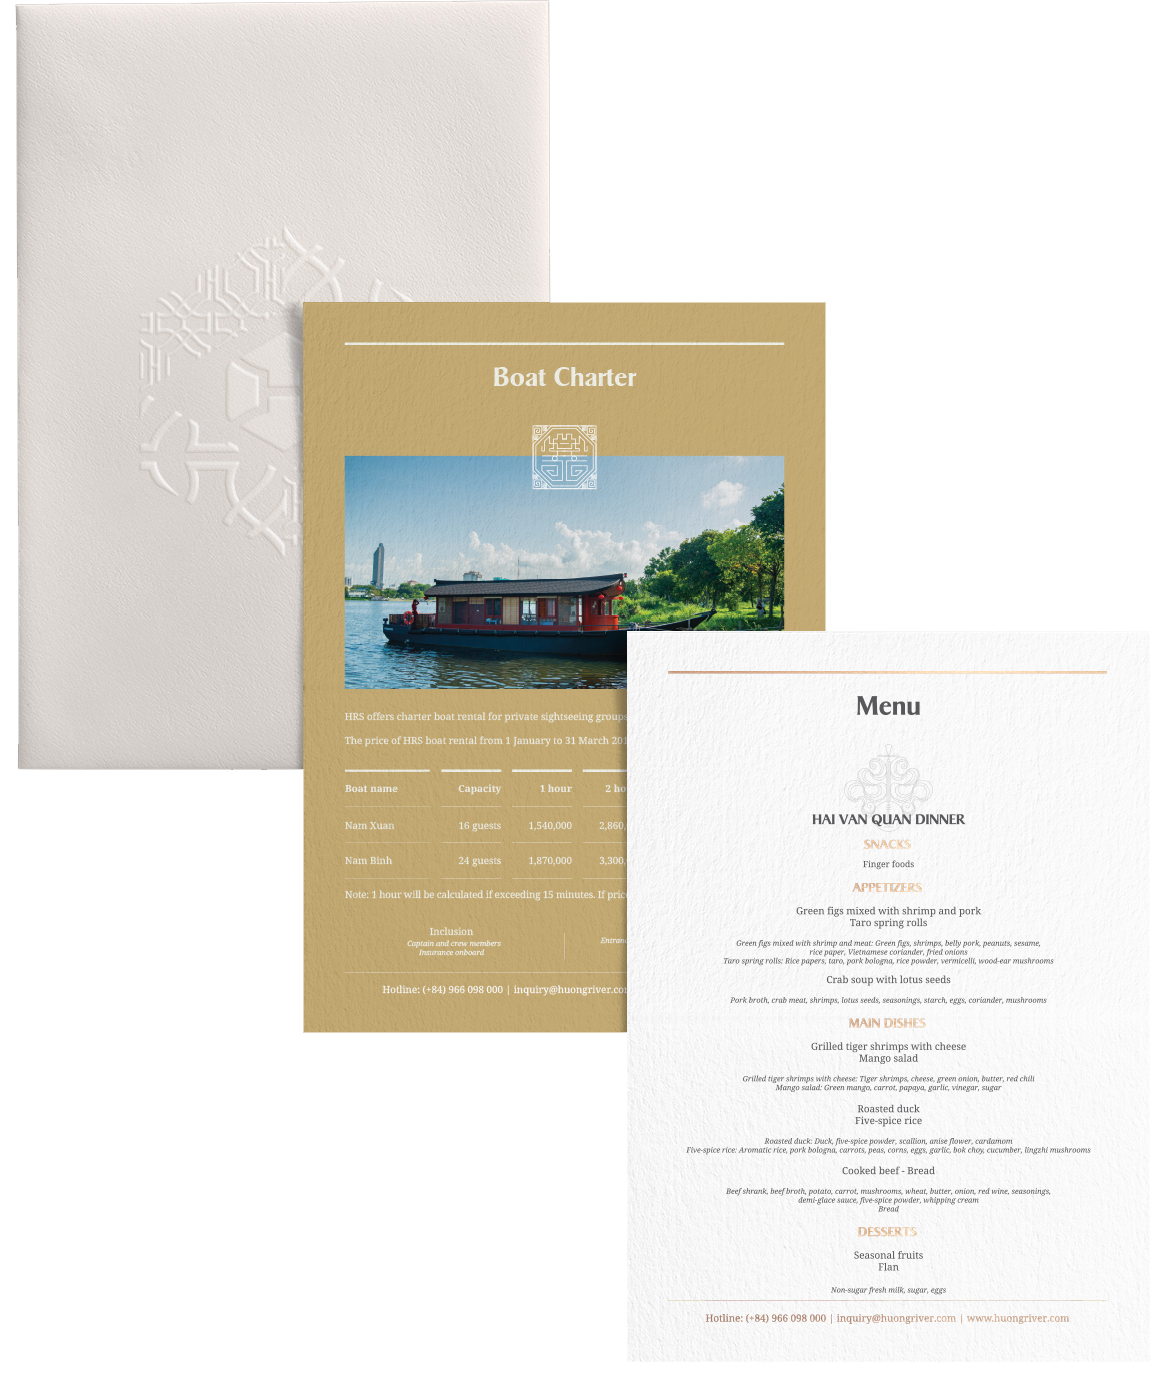 Thiết kế menu nhà hàng trên thuyền HRS bởi bna.com.vn